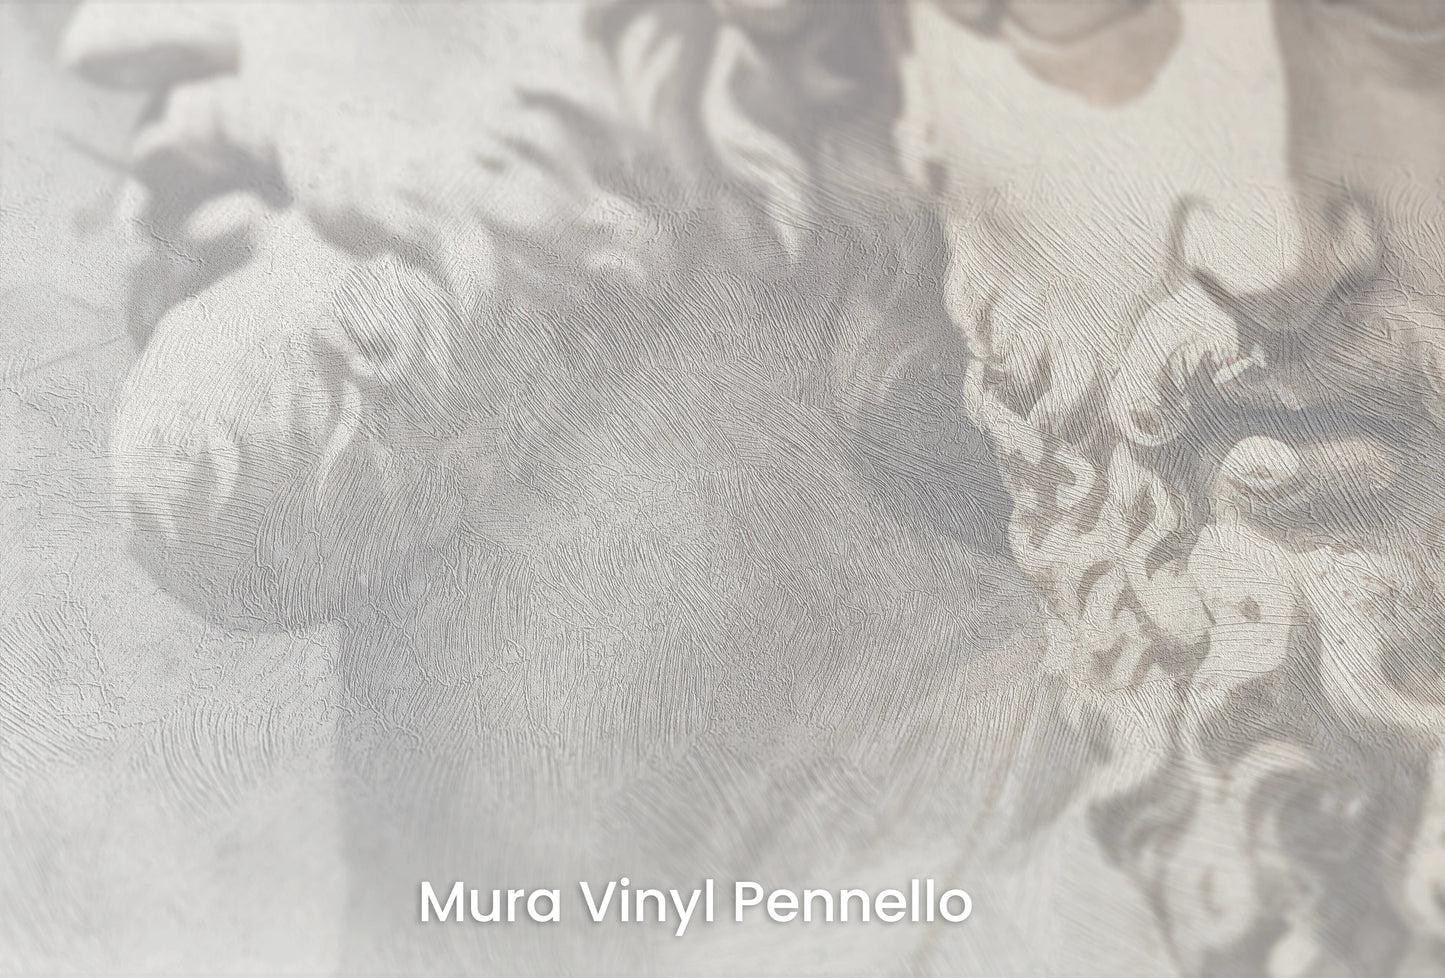 Zbliżenie na artystyczną fototapetę o nazwie Antiquity's Whisper na podłożu Mura Vinyl Pennello - faktura pociągnięć pędzla malarskiego.